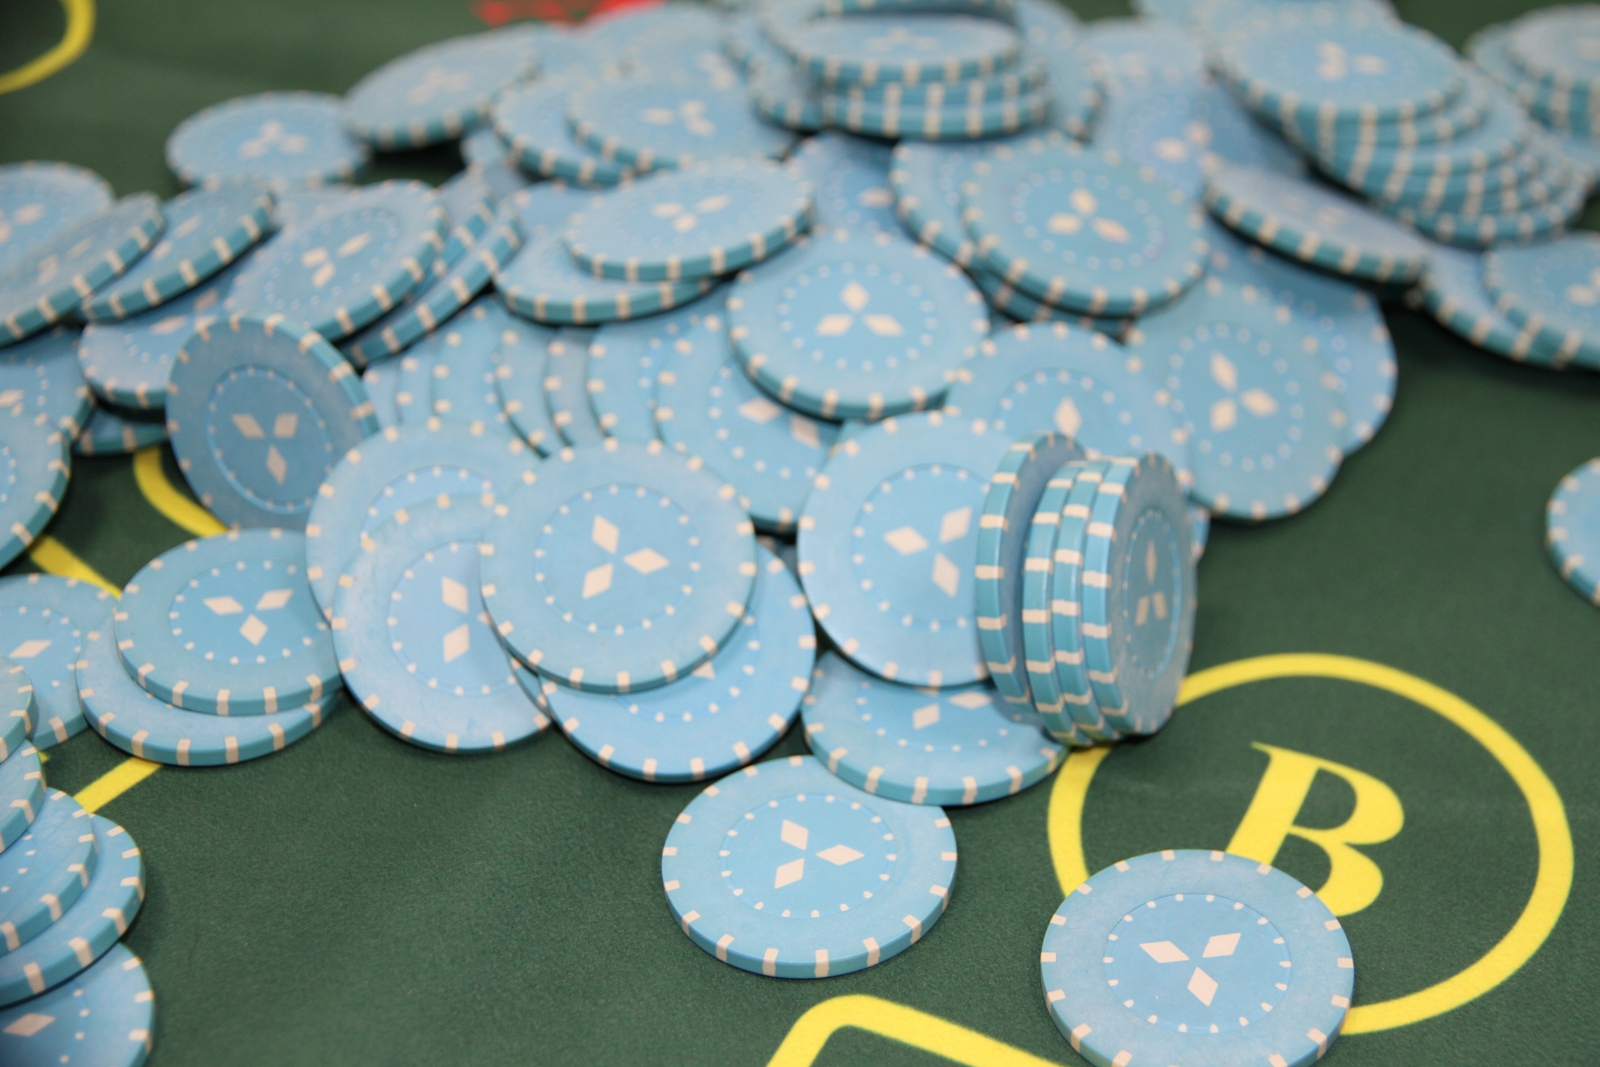 Двое екатеринбуржцев подозреваются в организации незаконного казино